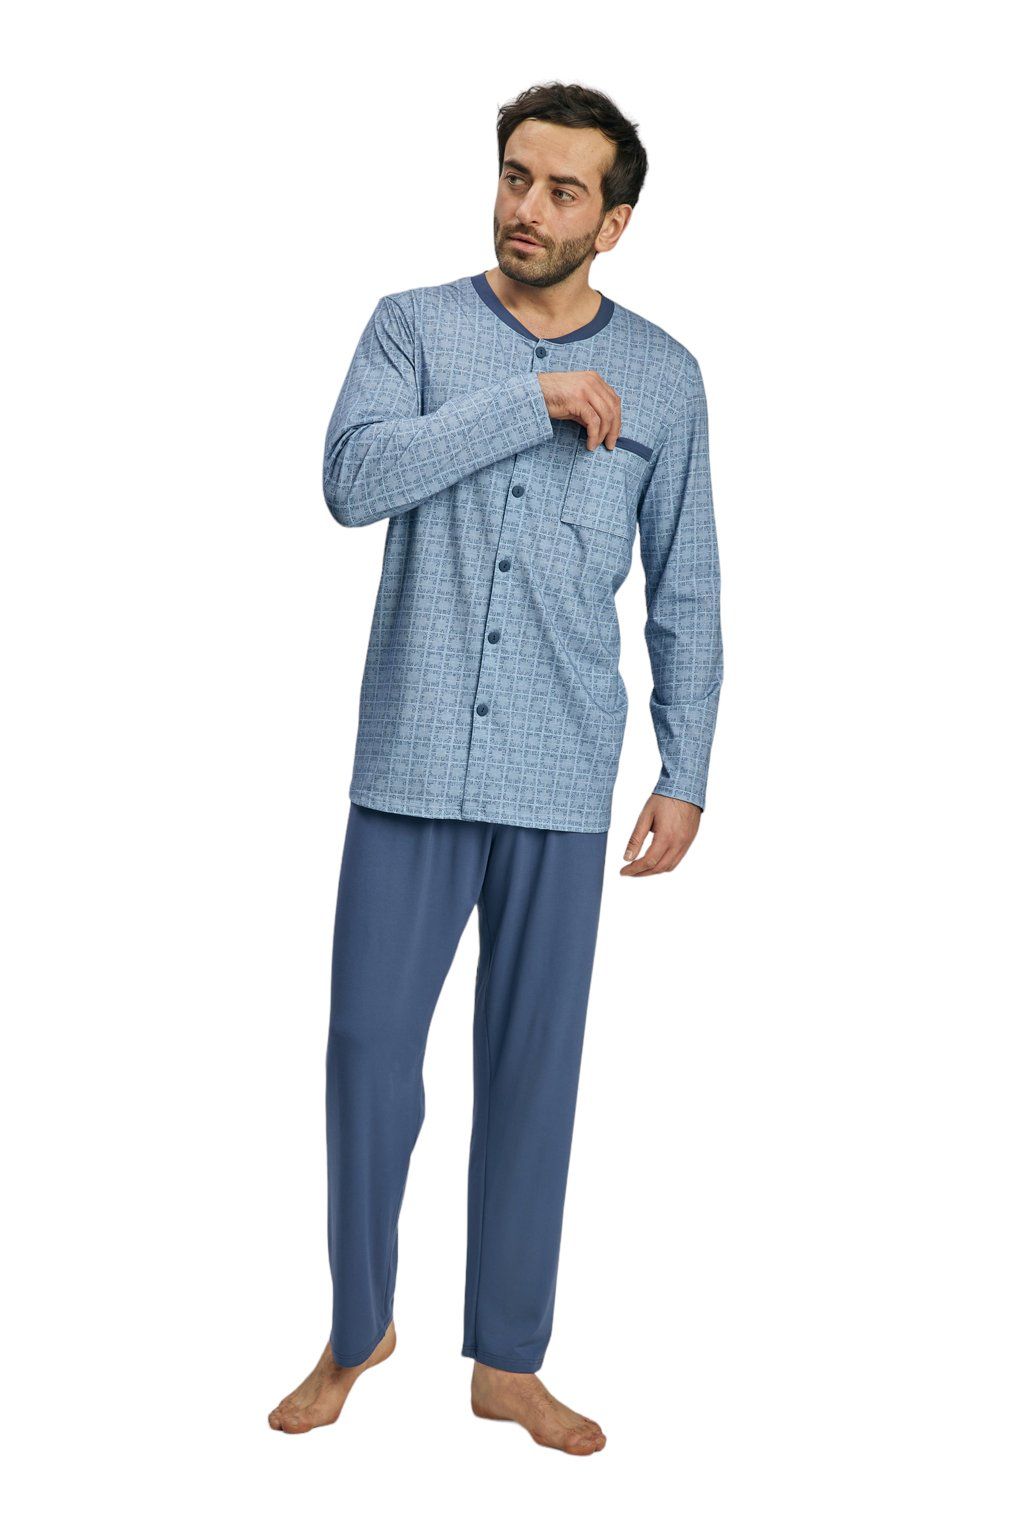 Pánské pyžamo s dlouhým rukávem, 204140 416, modrá Wadima